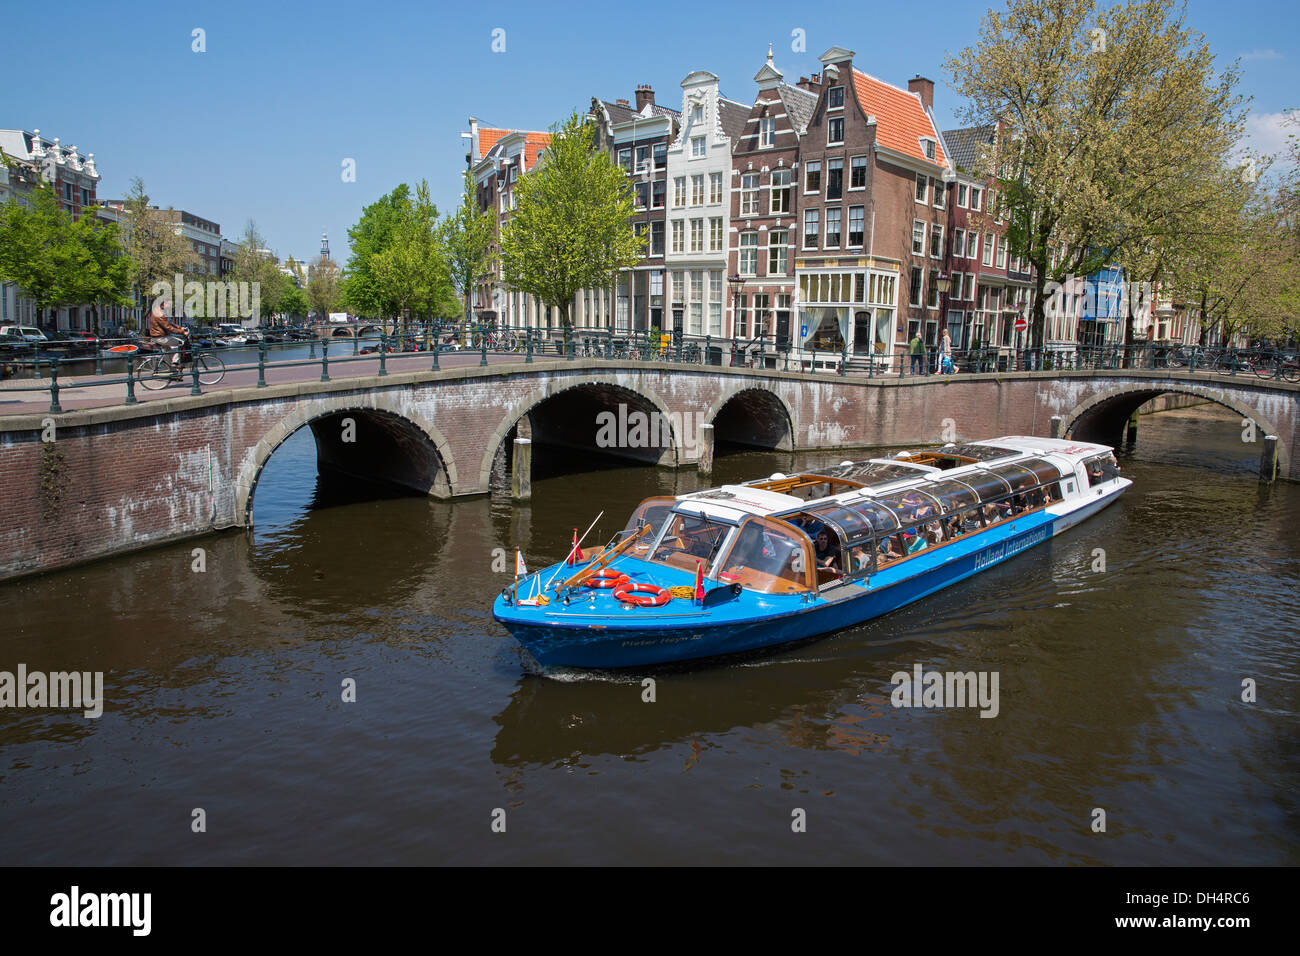 Pays-bas, Amsterdam, traversée de canaux appelés Keizersgracht et Leidsegracht. UNESCO World Heritage Site. Bateau aller-retour. Canal ou excursion en bateau. Banque D'Images